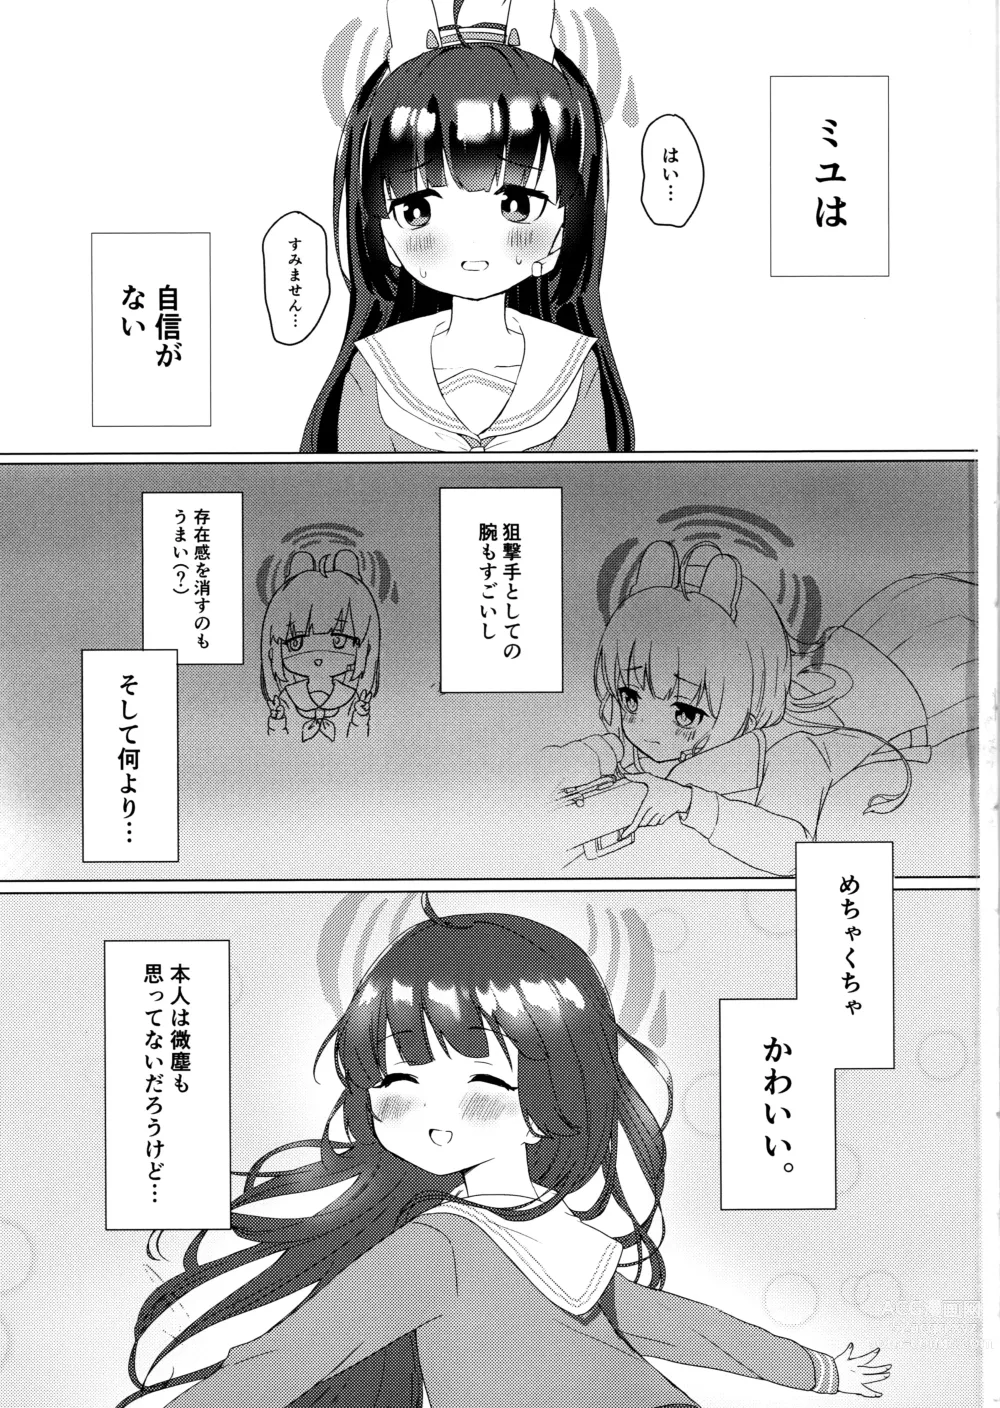 Page 2 of doujinshi Kasumizawa Miyu o Amayakashitai!